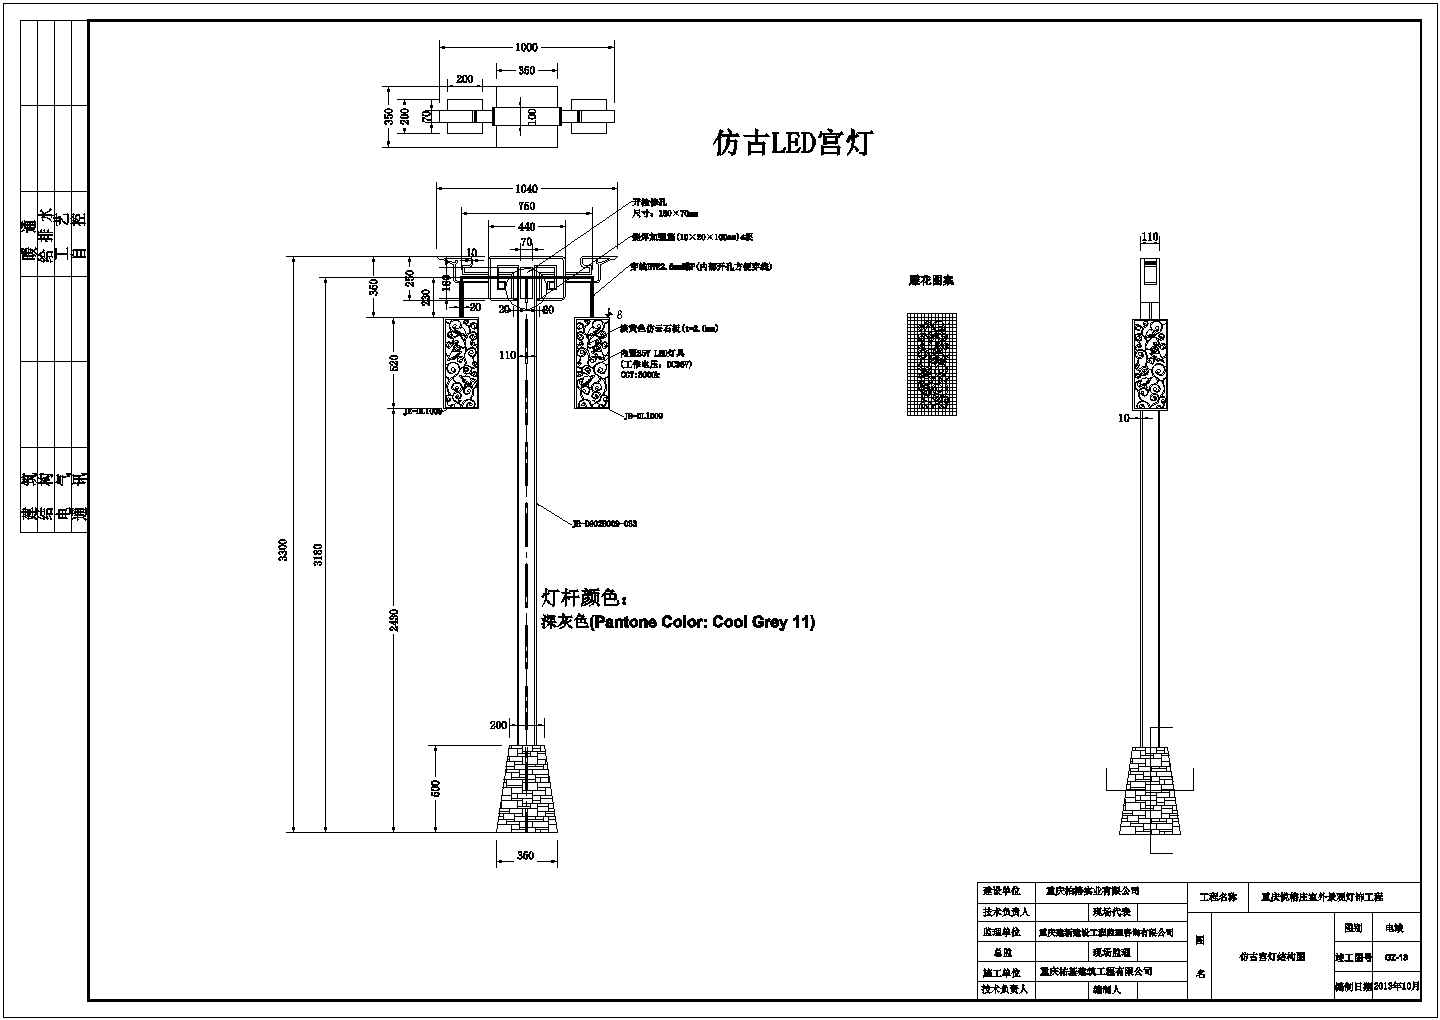 【重庆】北碚悦榕庄亮化工程方案设计图